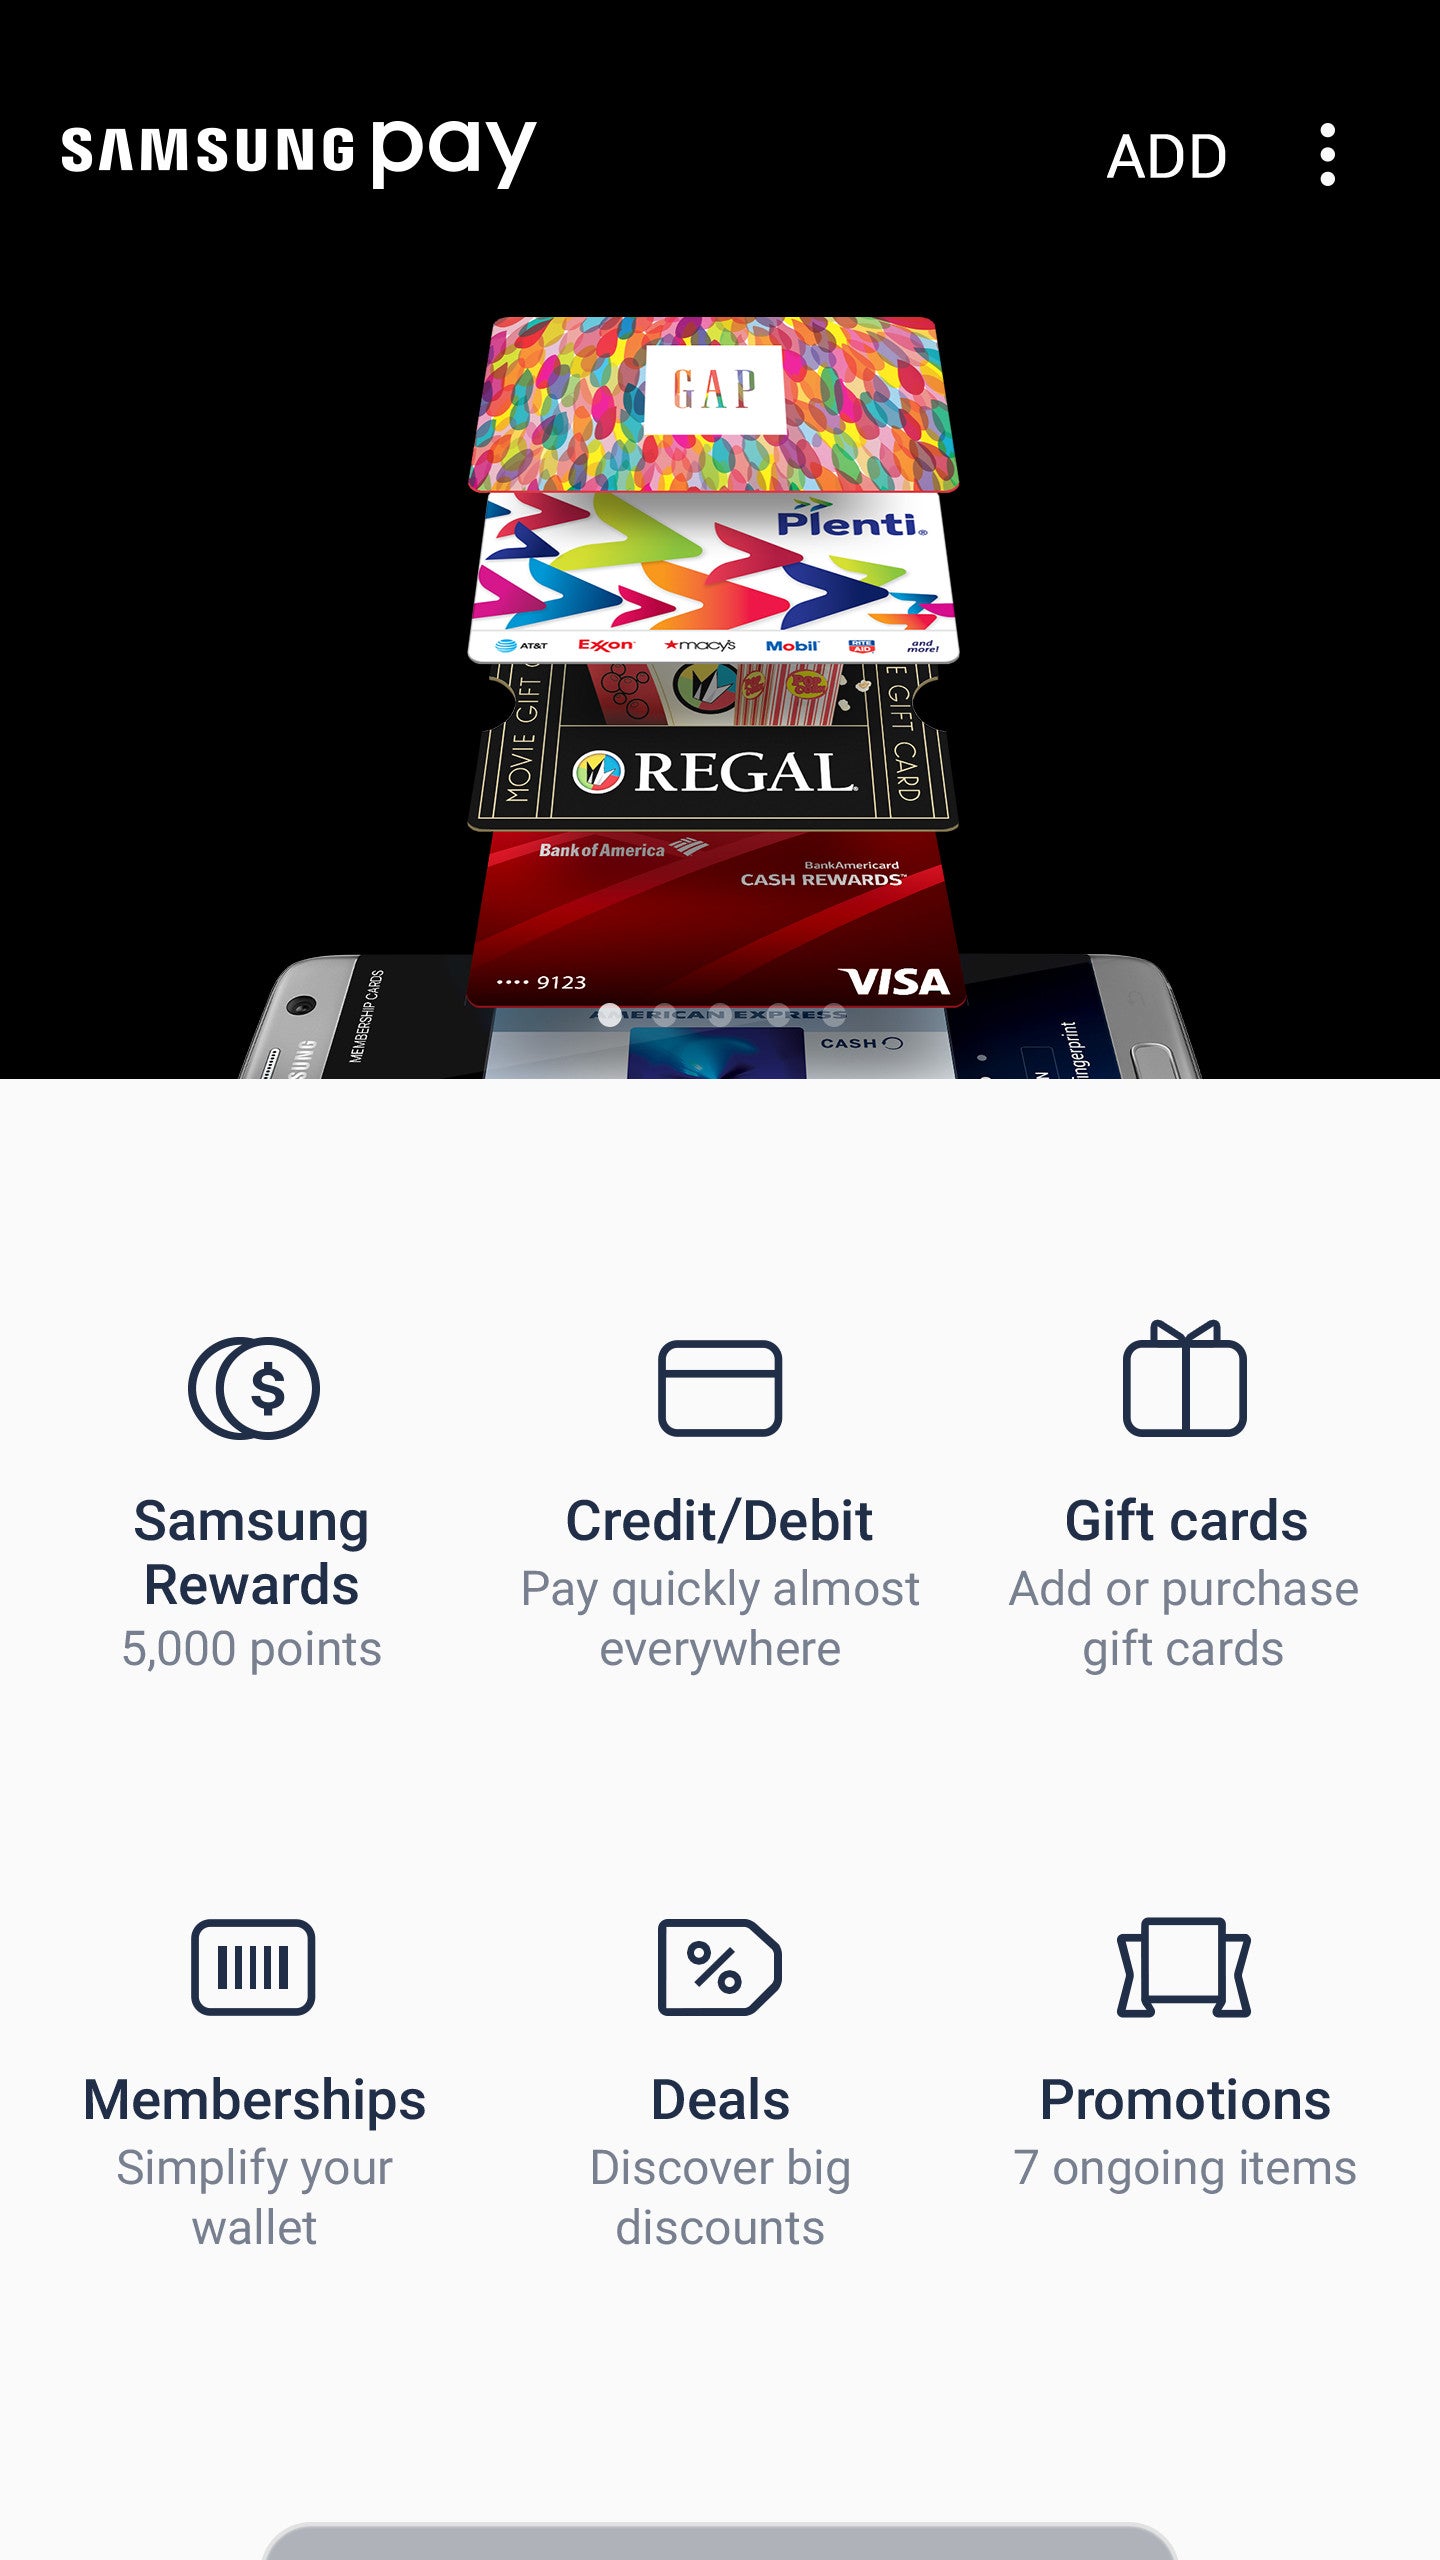 Samsung Rewards - Samsung Pay gets Rewards program in the United States